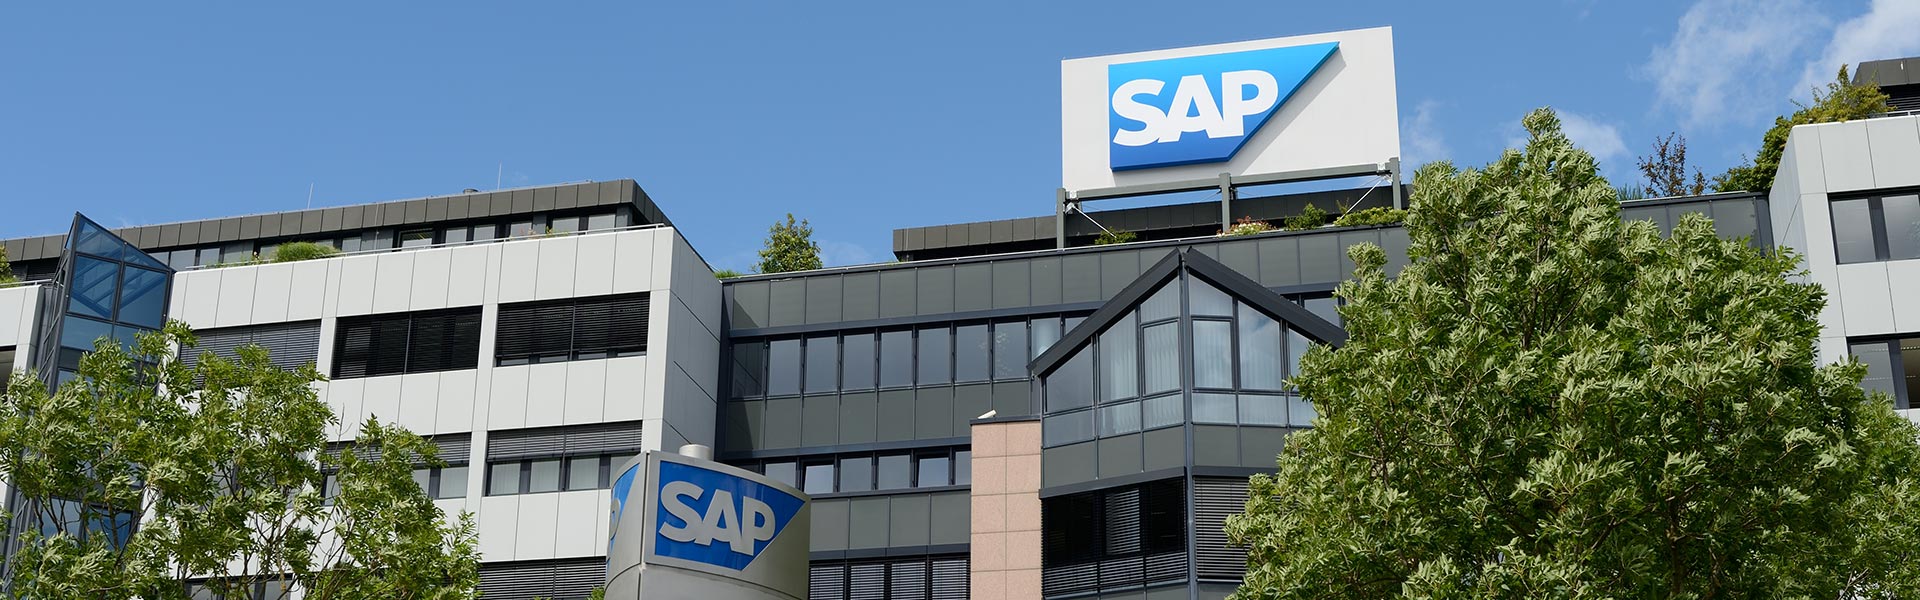 Google elige SAP como plataforma tecnológica para gestionar sus finanzas